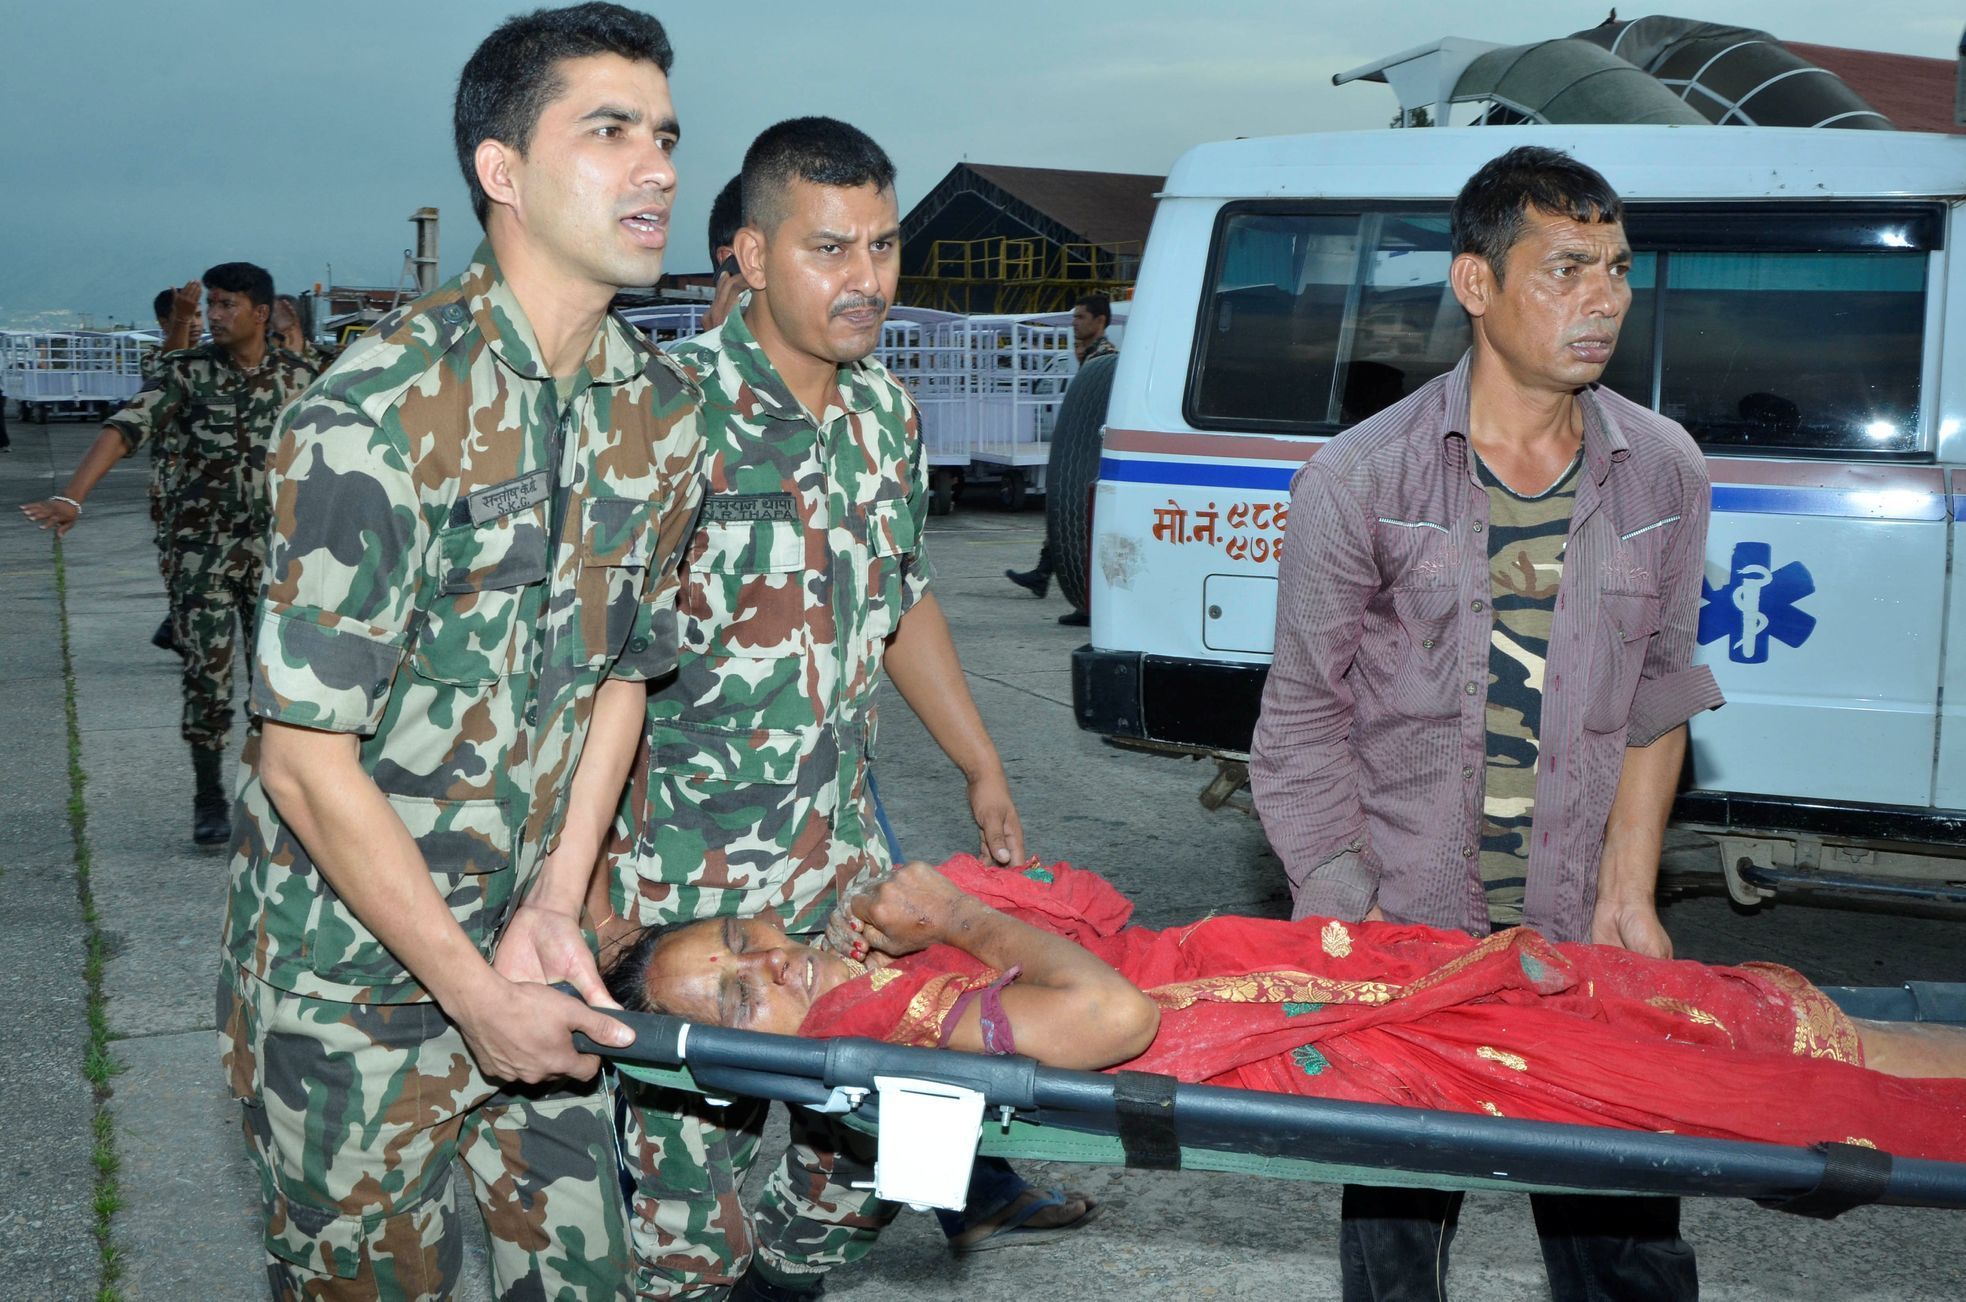 Zraněná žena ze zříceného autobusu v Nepálu